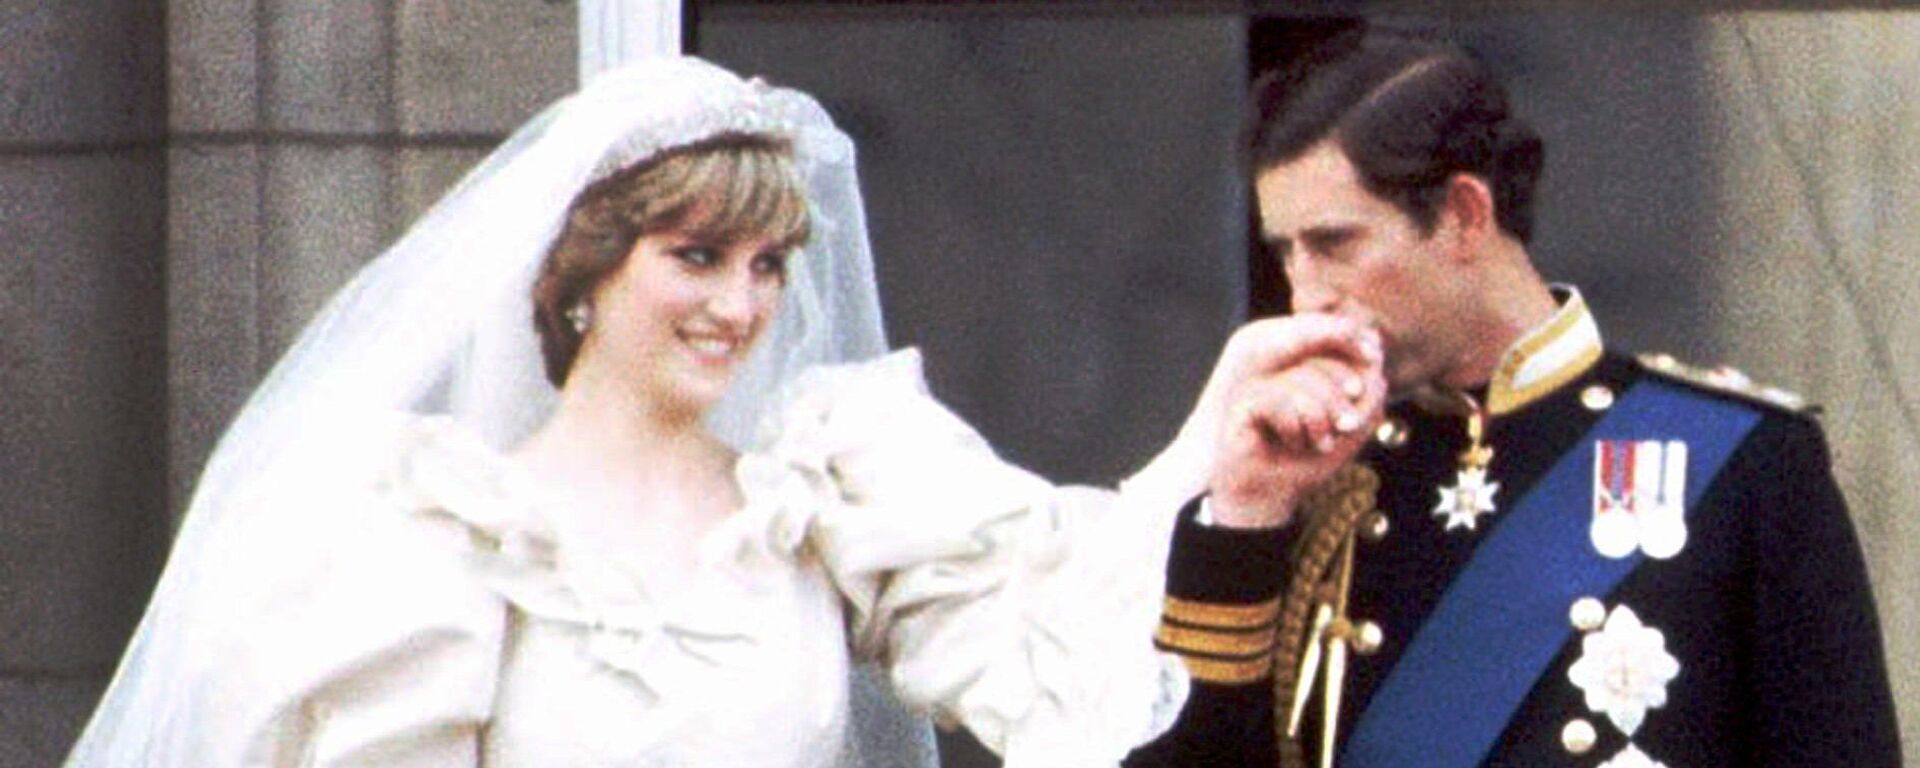 حفل زفاف الأميرة ديانا والأمير تشارلز في 29 يوليو/ تموز 1981 - سبوتنيك عربي, 1920, 31.07.2021